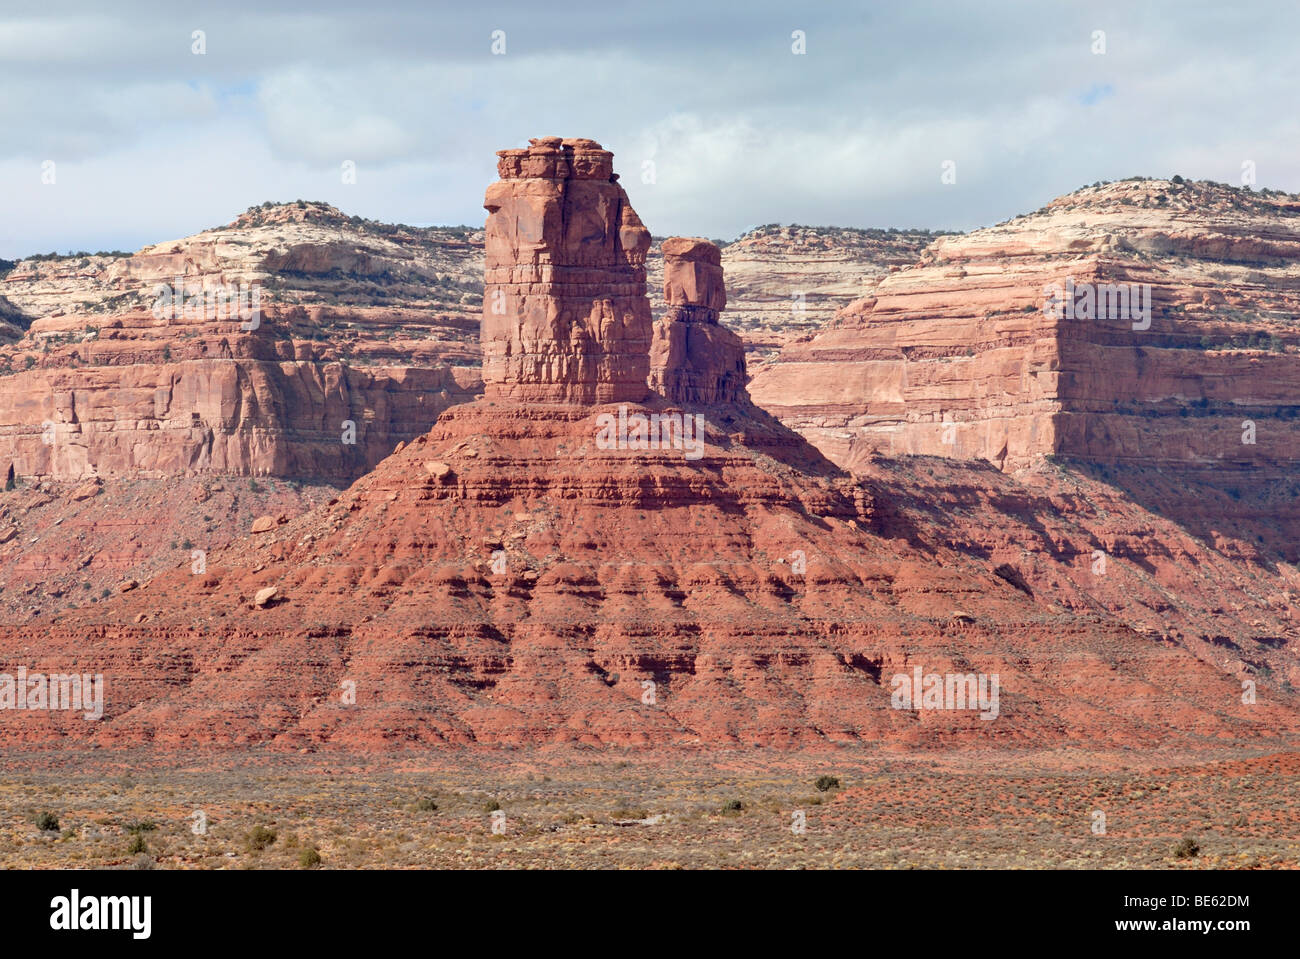 Monoliti giganti, torri di roccia sulla base conica, la Valle degli Dèi, sull'autostrada 163, nei pressi di Mexican Hat, Utah, Stati Uniti d'America Foto Stock